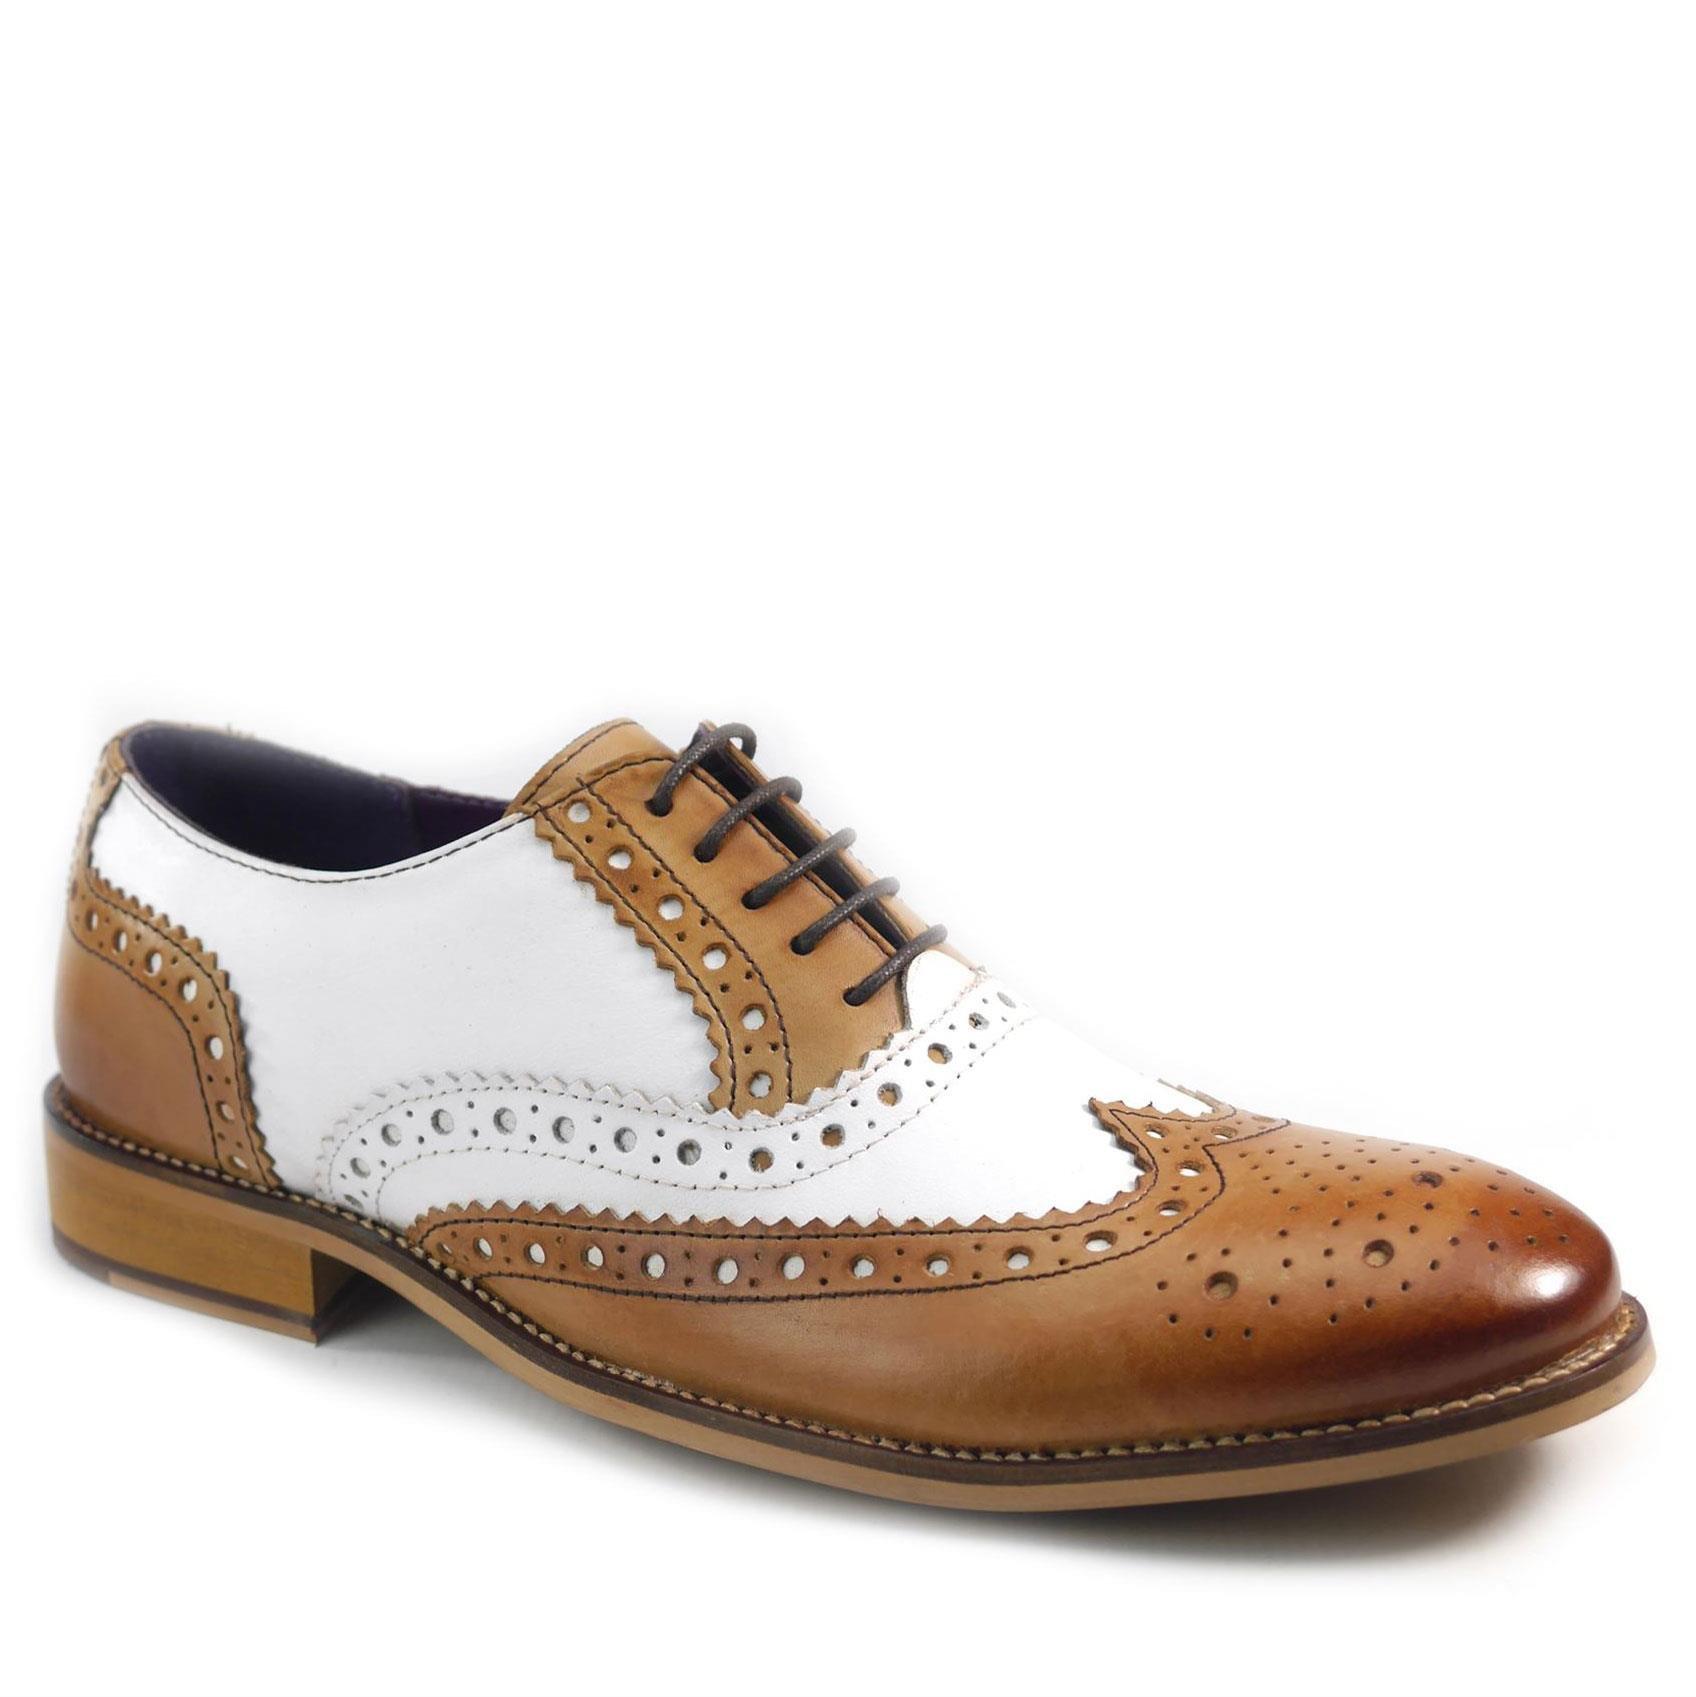 Кожаные туфли-броги Redford Frank James, мультиколор кожаные формальные туфли броги harlow с острым носком frank james коричневый